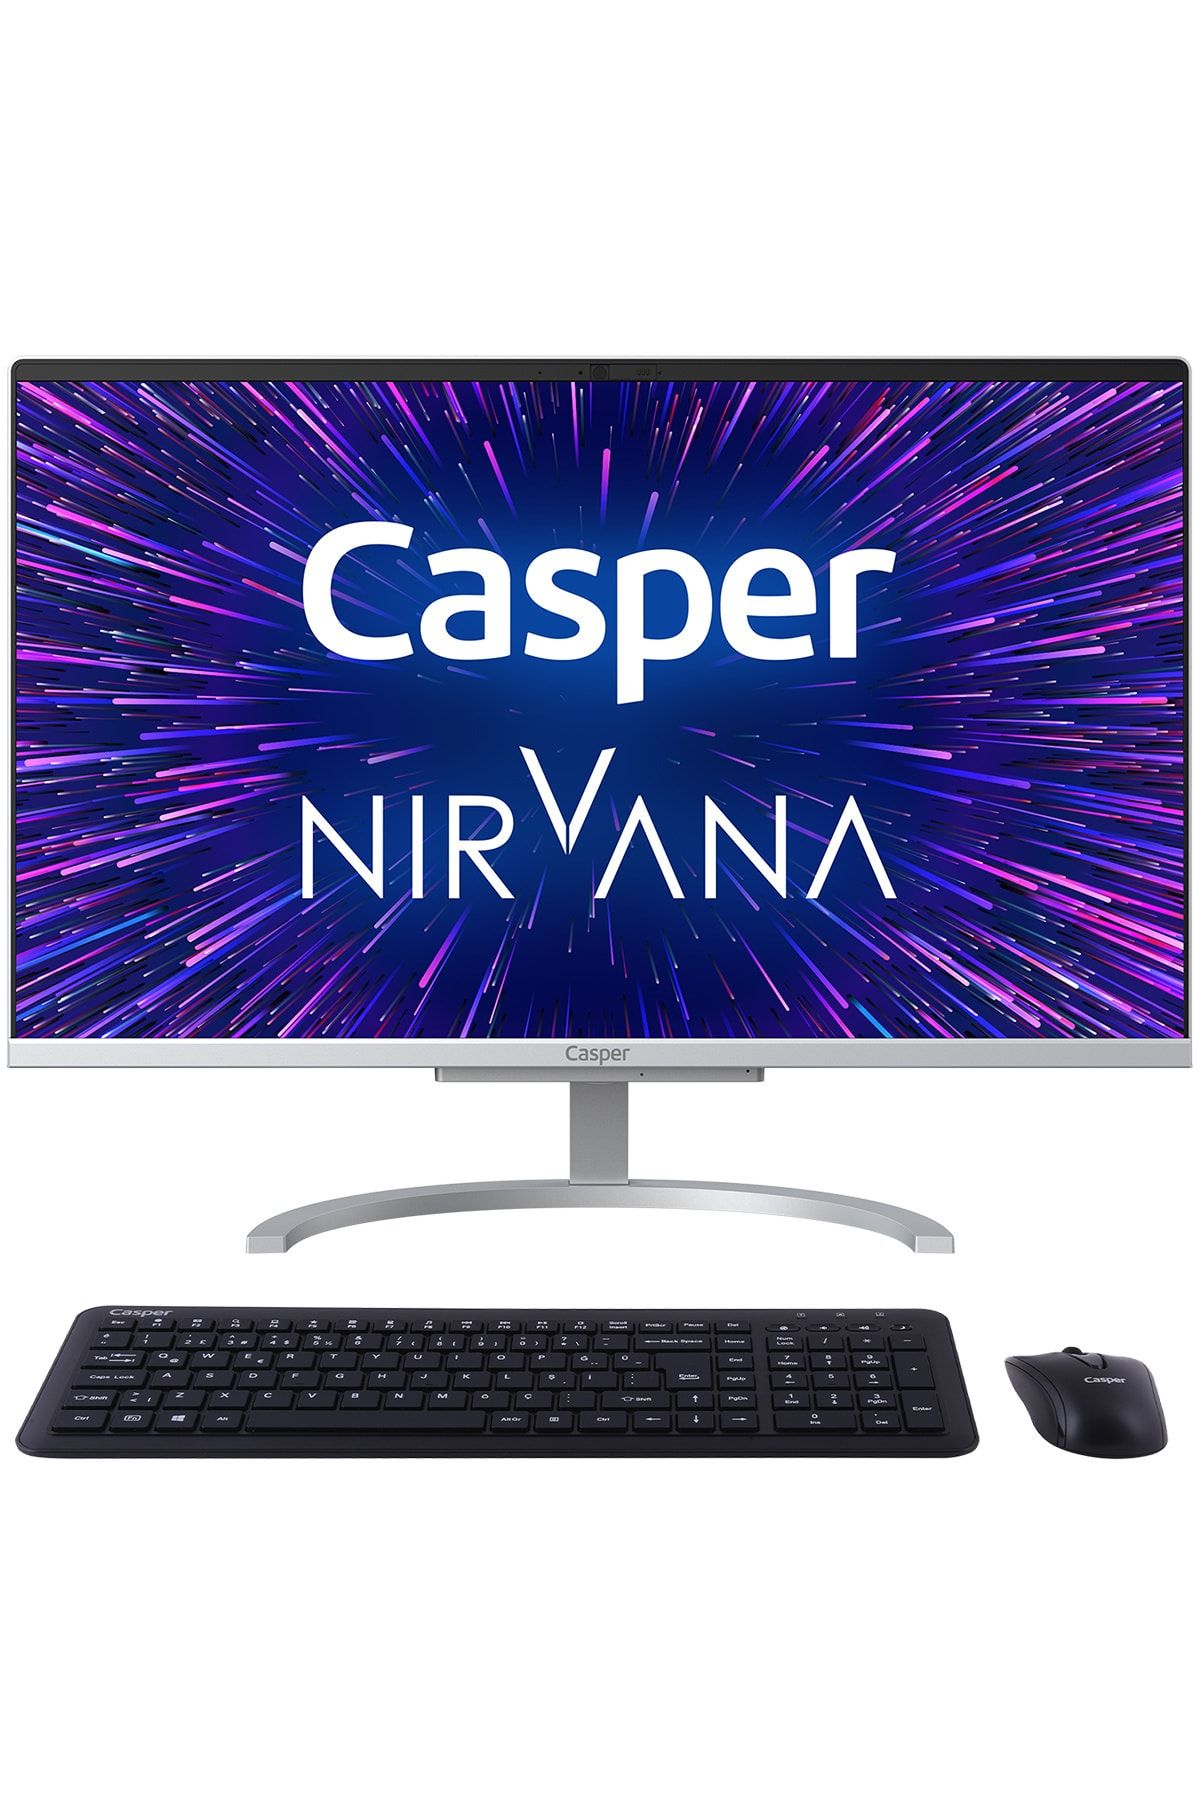 Casper Nirvana A46.1005-8e00x-v Intel Core I3-1005g1 8gb 480gb Ssd Freedos 21.5" Fhd